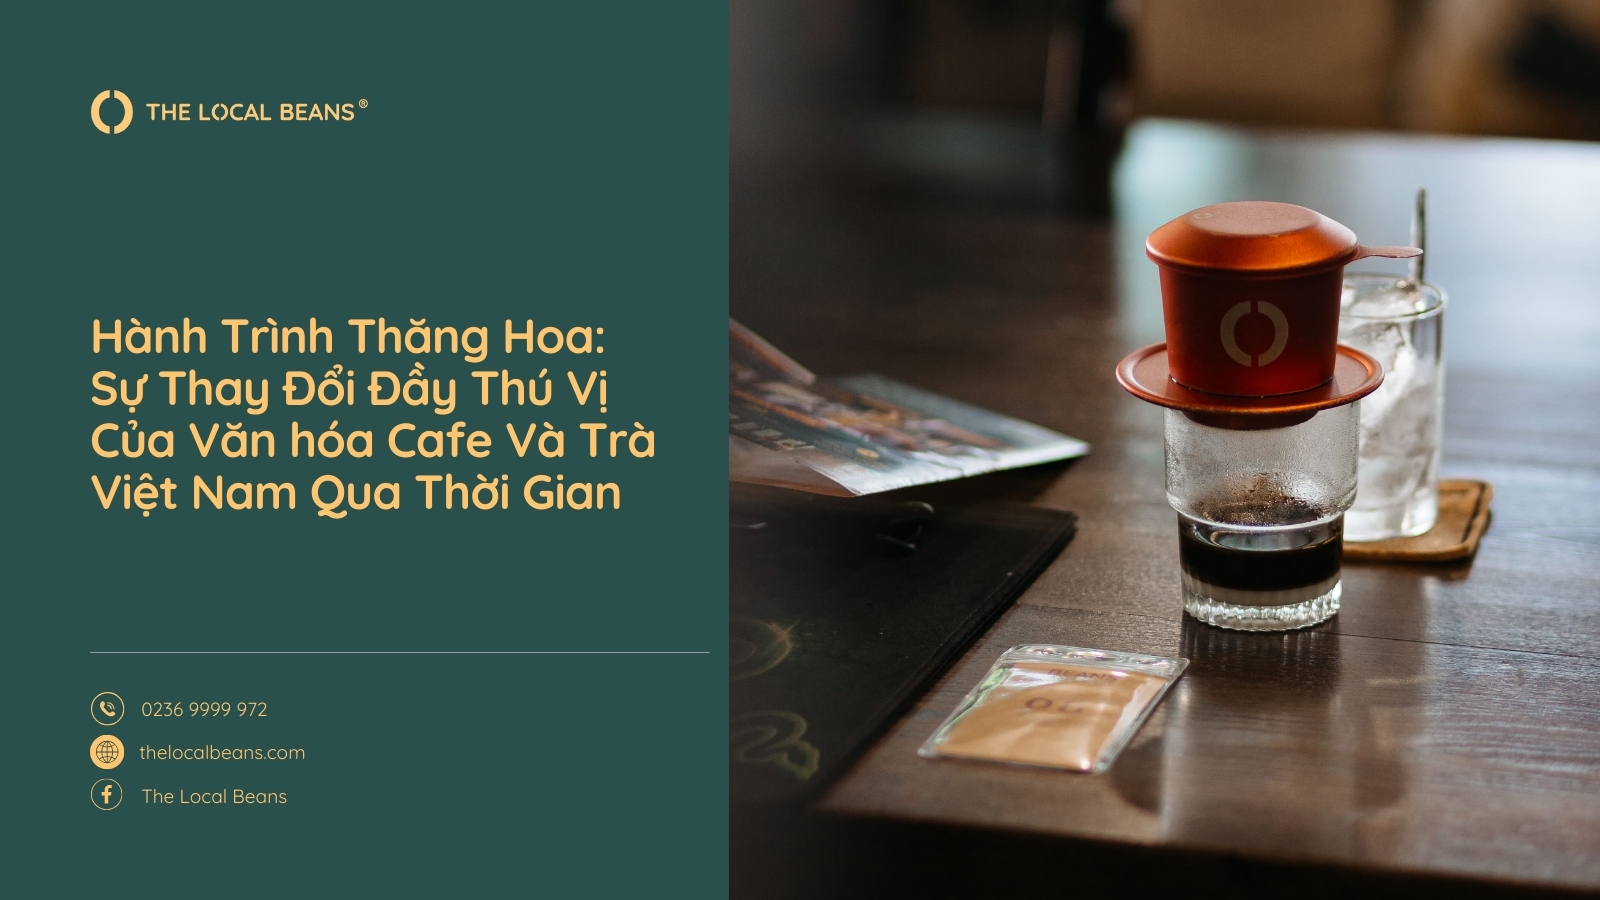 Hành Trình Thăng Hoa: Sự Thay Đổi Đầy Thú Vị Của Văn hóa Cafe Và Trà Việt Nam Qua Thời Gian